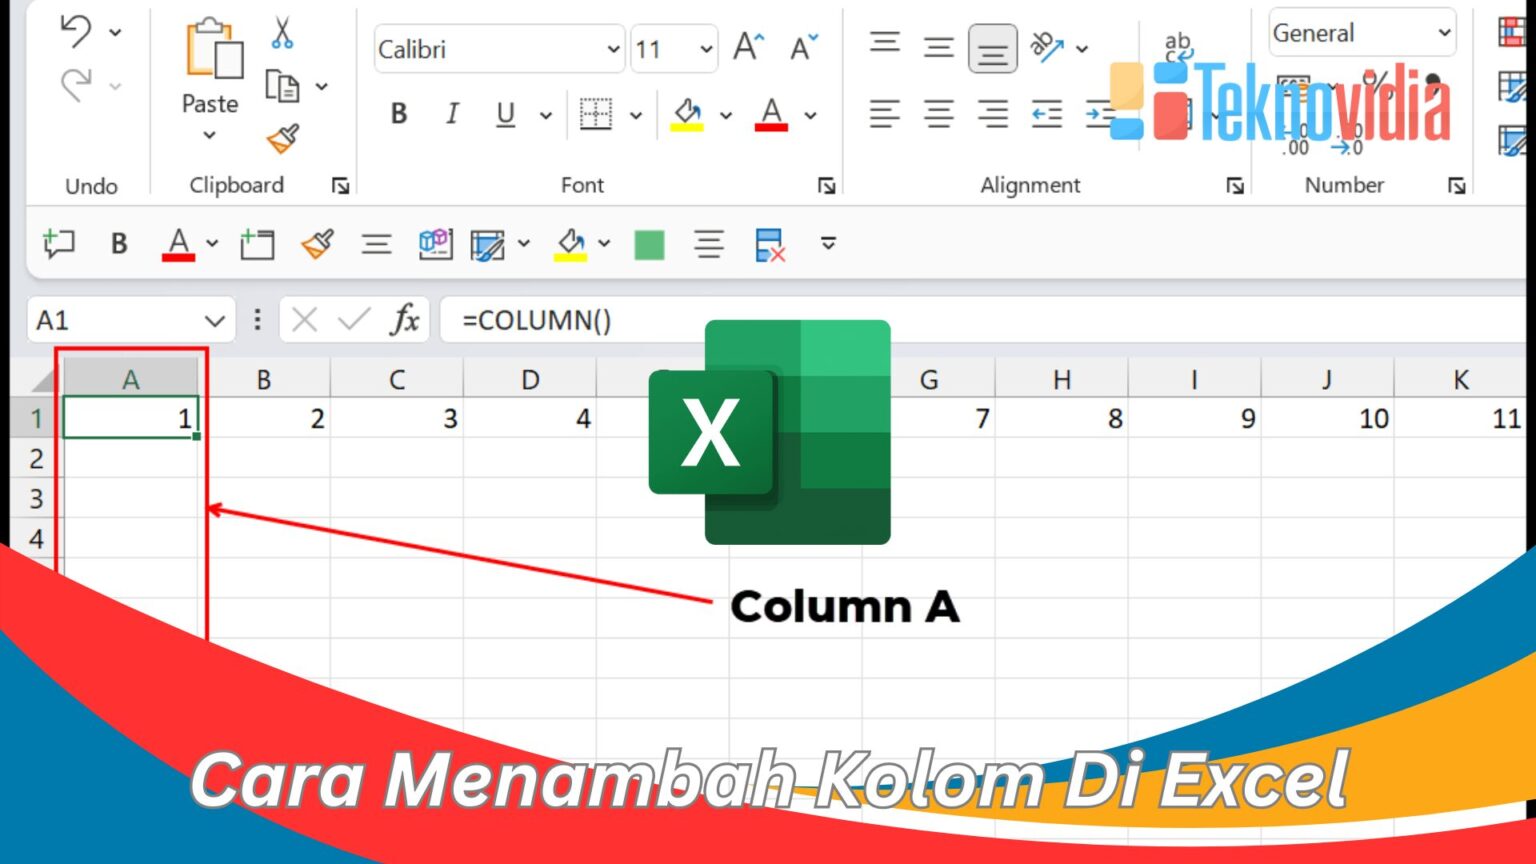 Cara Menambah Kolom Di Excel Dengan Mudah Dan Cepat Teknovidia 0946